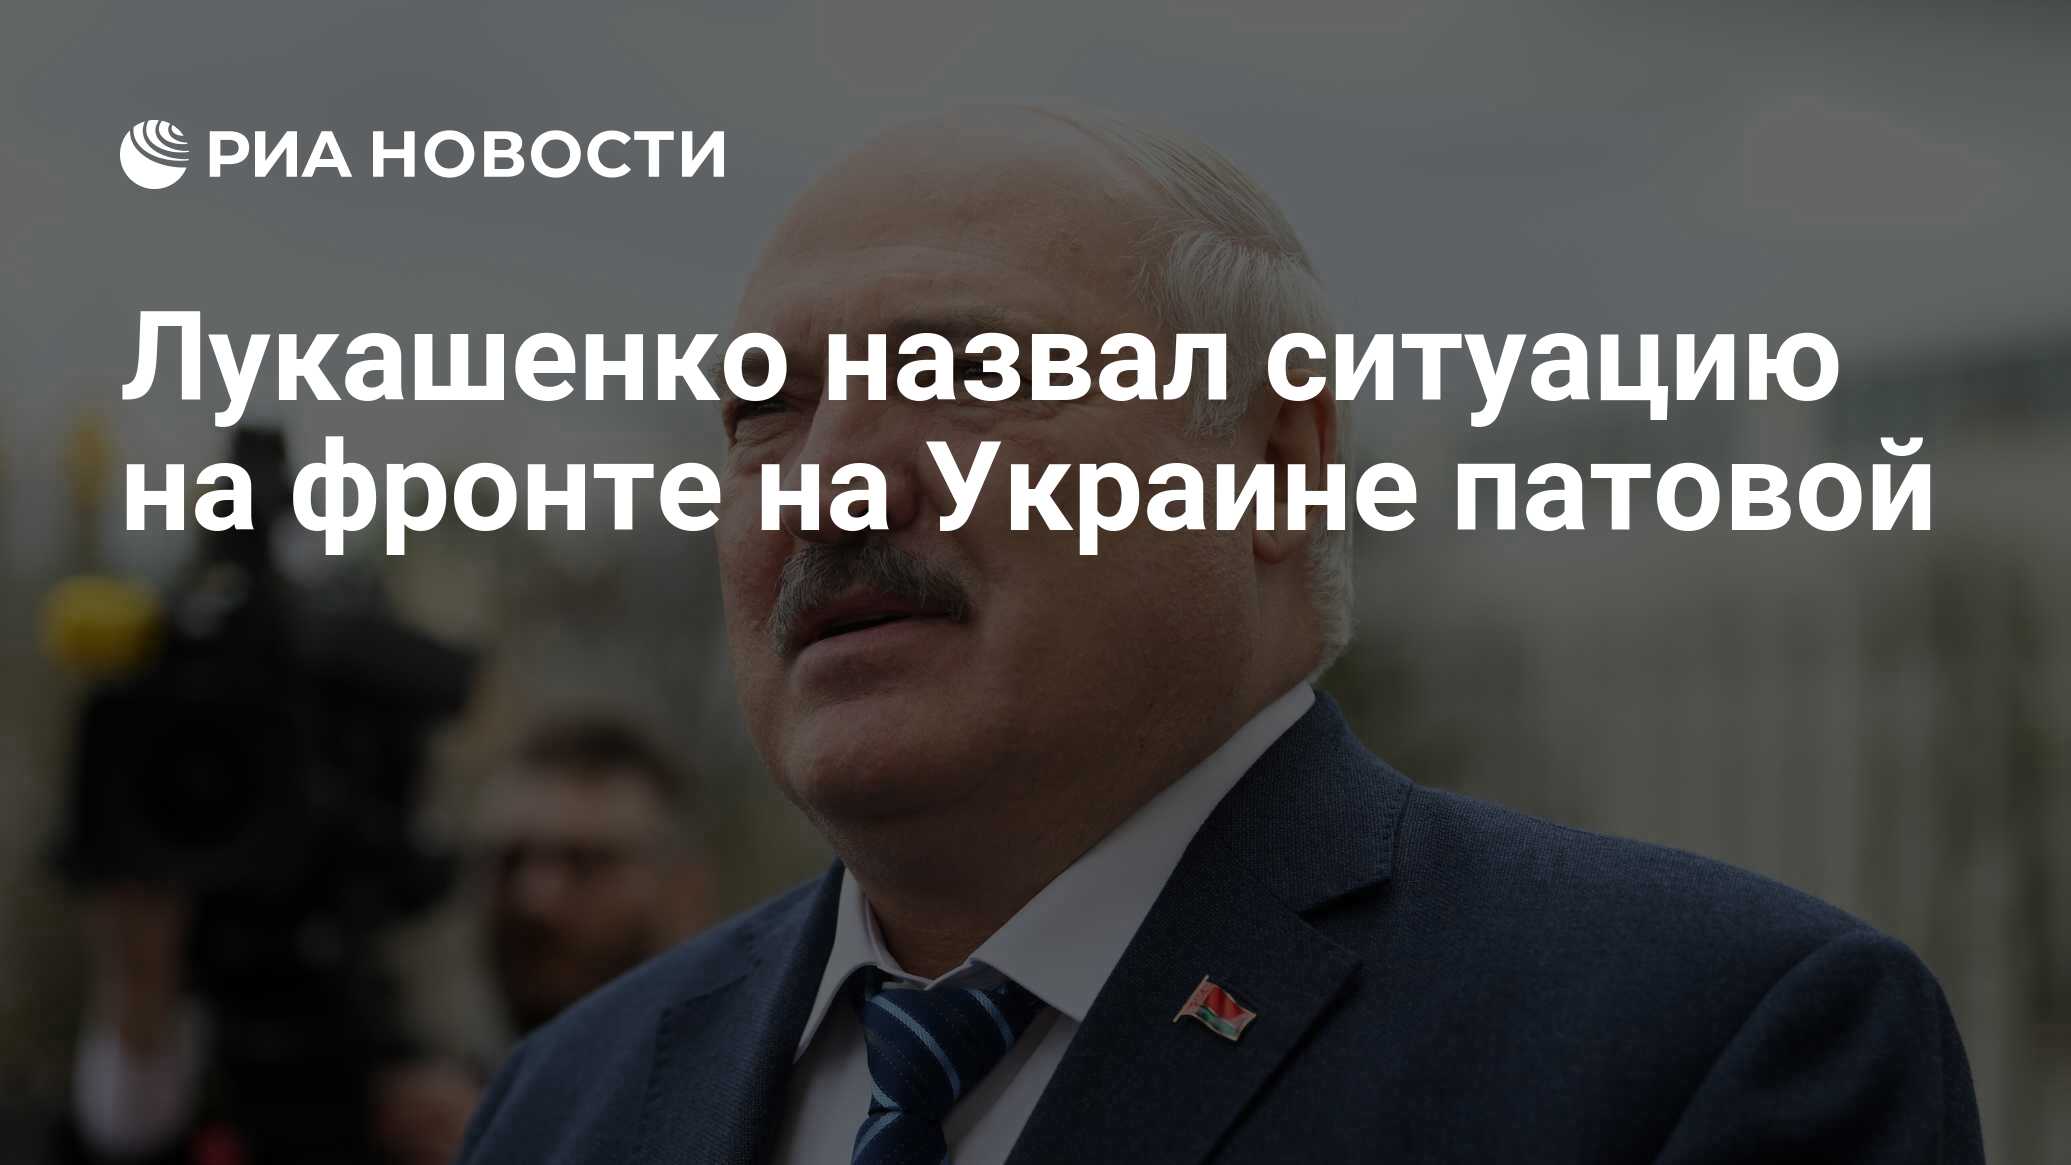 Лукашенко назвал ситуацию на фронте на Украине патовой